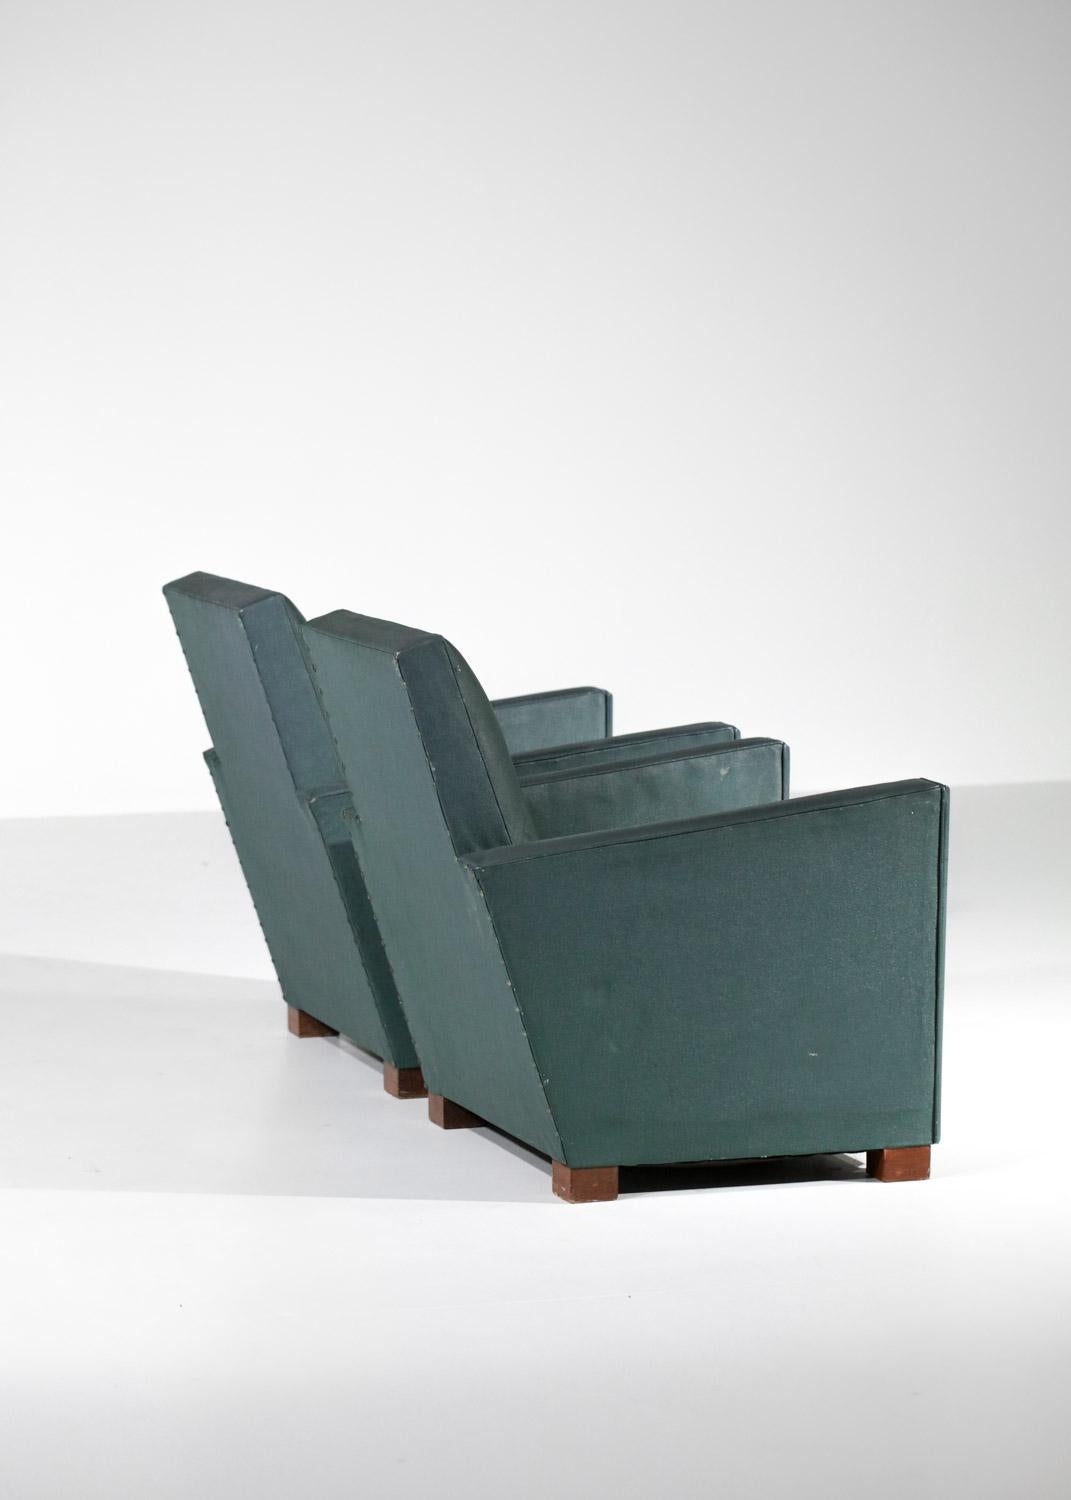 Ein Paar Vintage Art Deco Sessel aus den 50er Jahren im Stil von Jacques Adnets Werken. Struktur, Sitze und Rückenlehnen mit Kunstleder bezogen, Beine aus heller Eiche. Schöner Vintage-Zustand des Sets, um Spuren von Gebrauch und Zeit auf dem Set